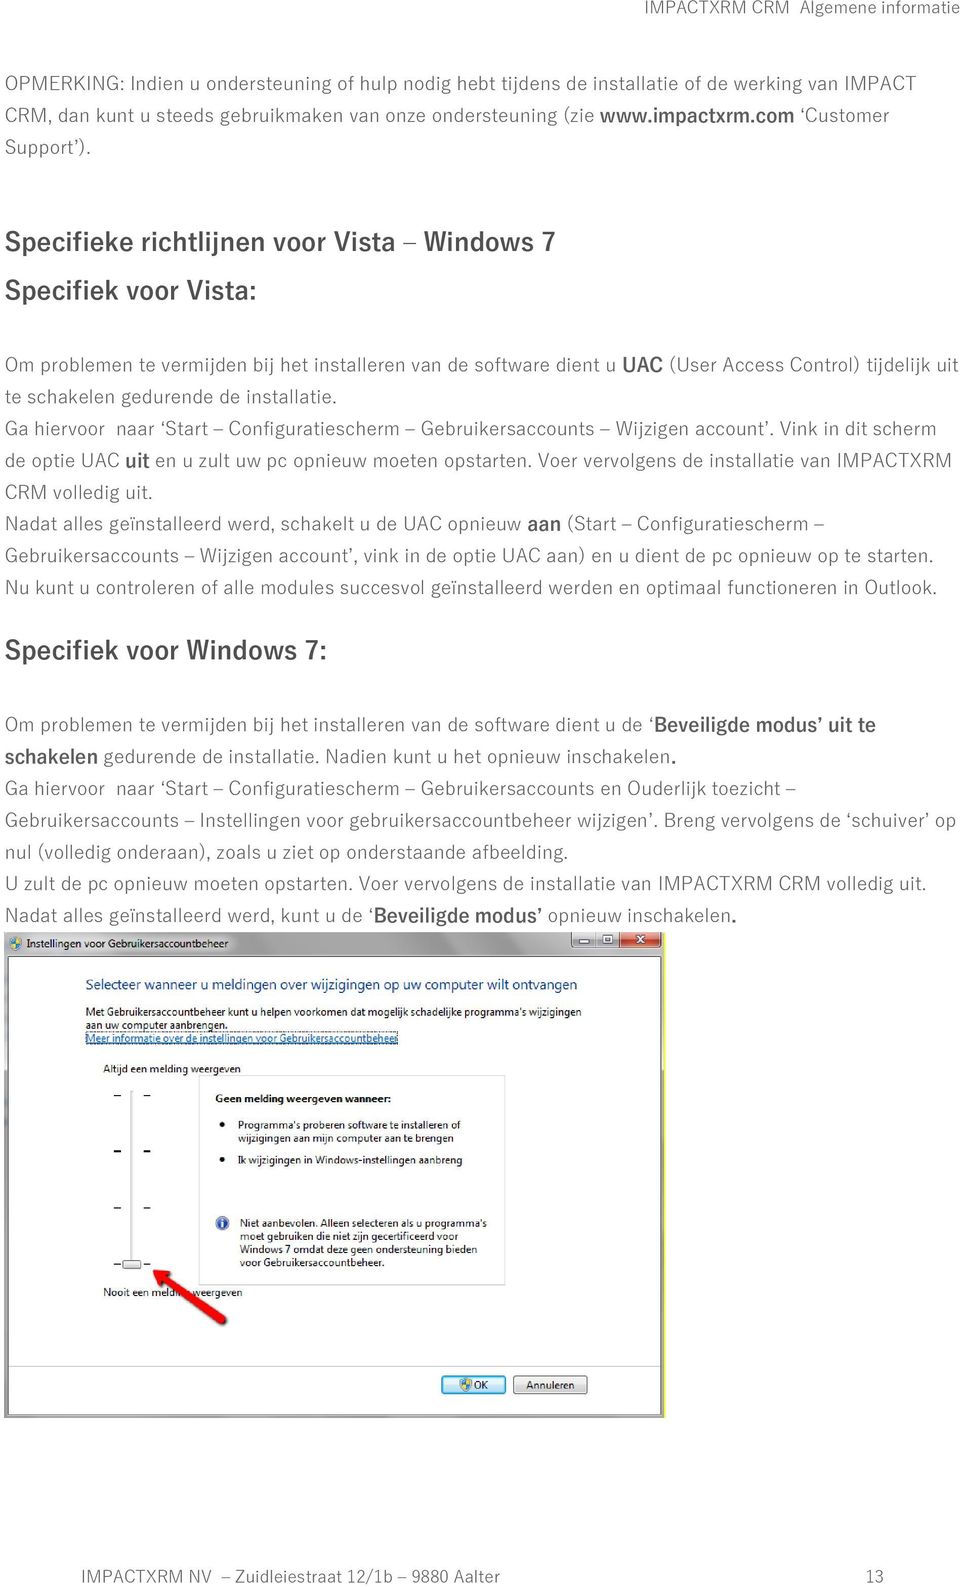 Specifieke richtlijnen voor Vista Windows 7 Specifiek voor Vista: Om problemen te vermijden bij het installeren van de software dient u UAC (User Access Control) tijdelijk uit te schakelen gedurende